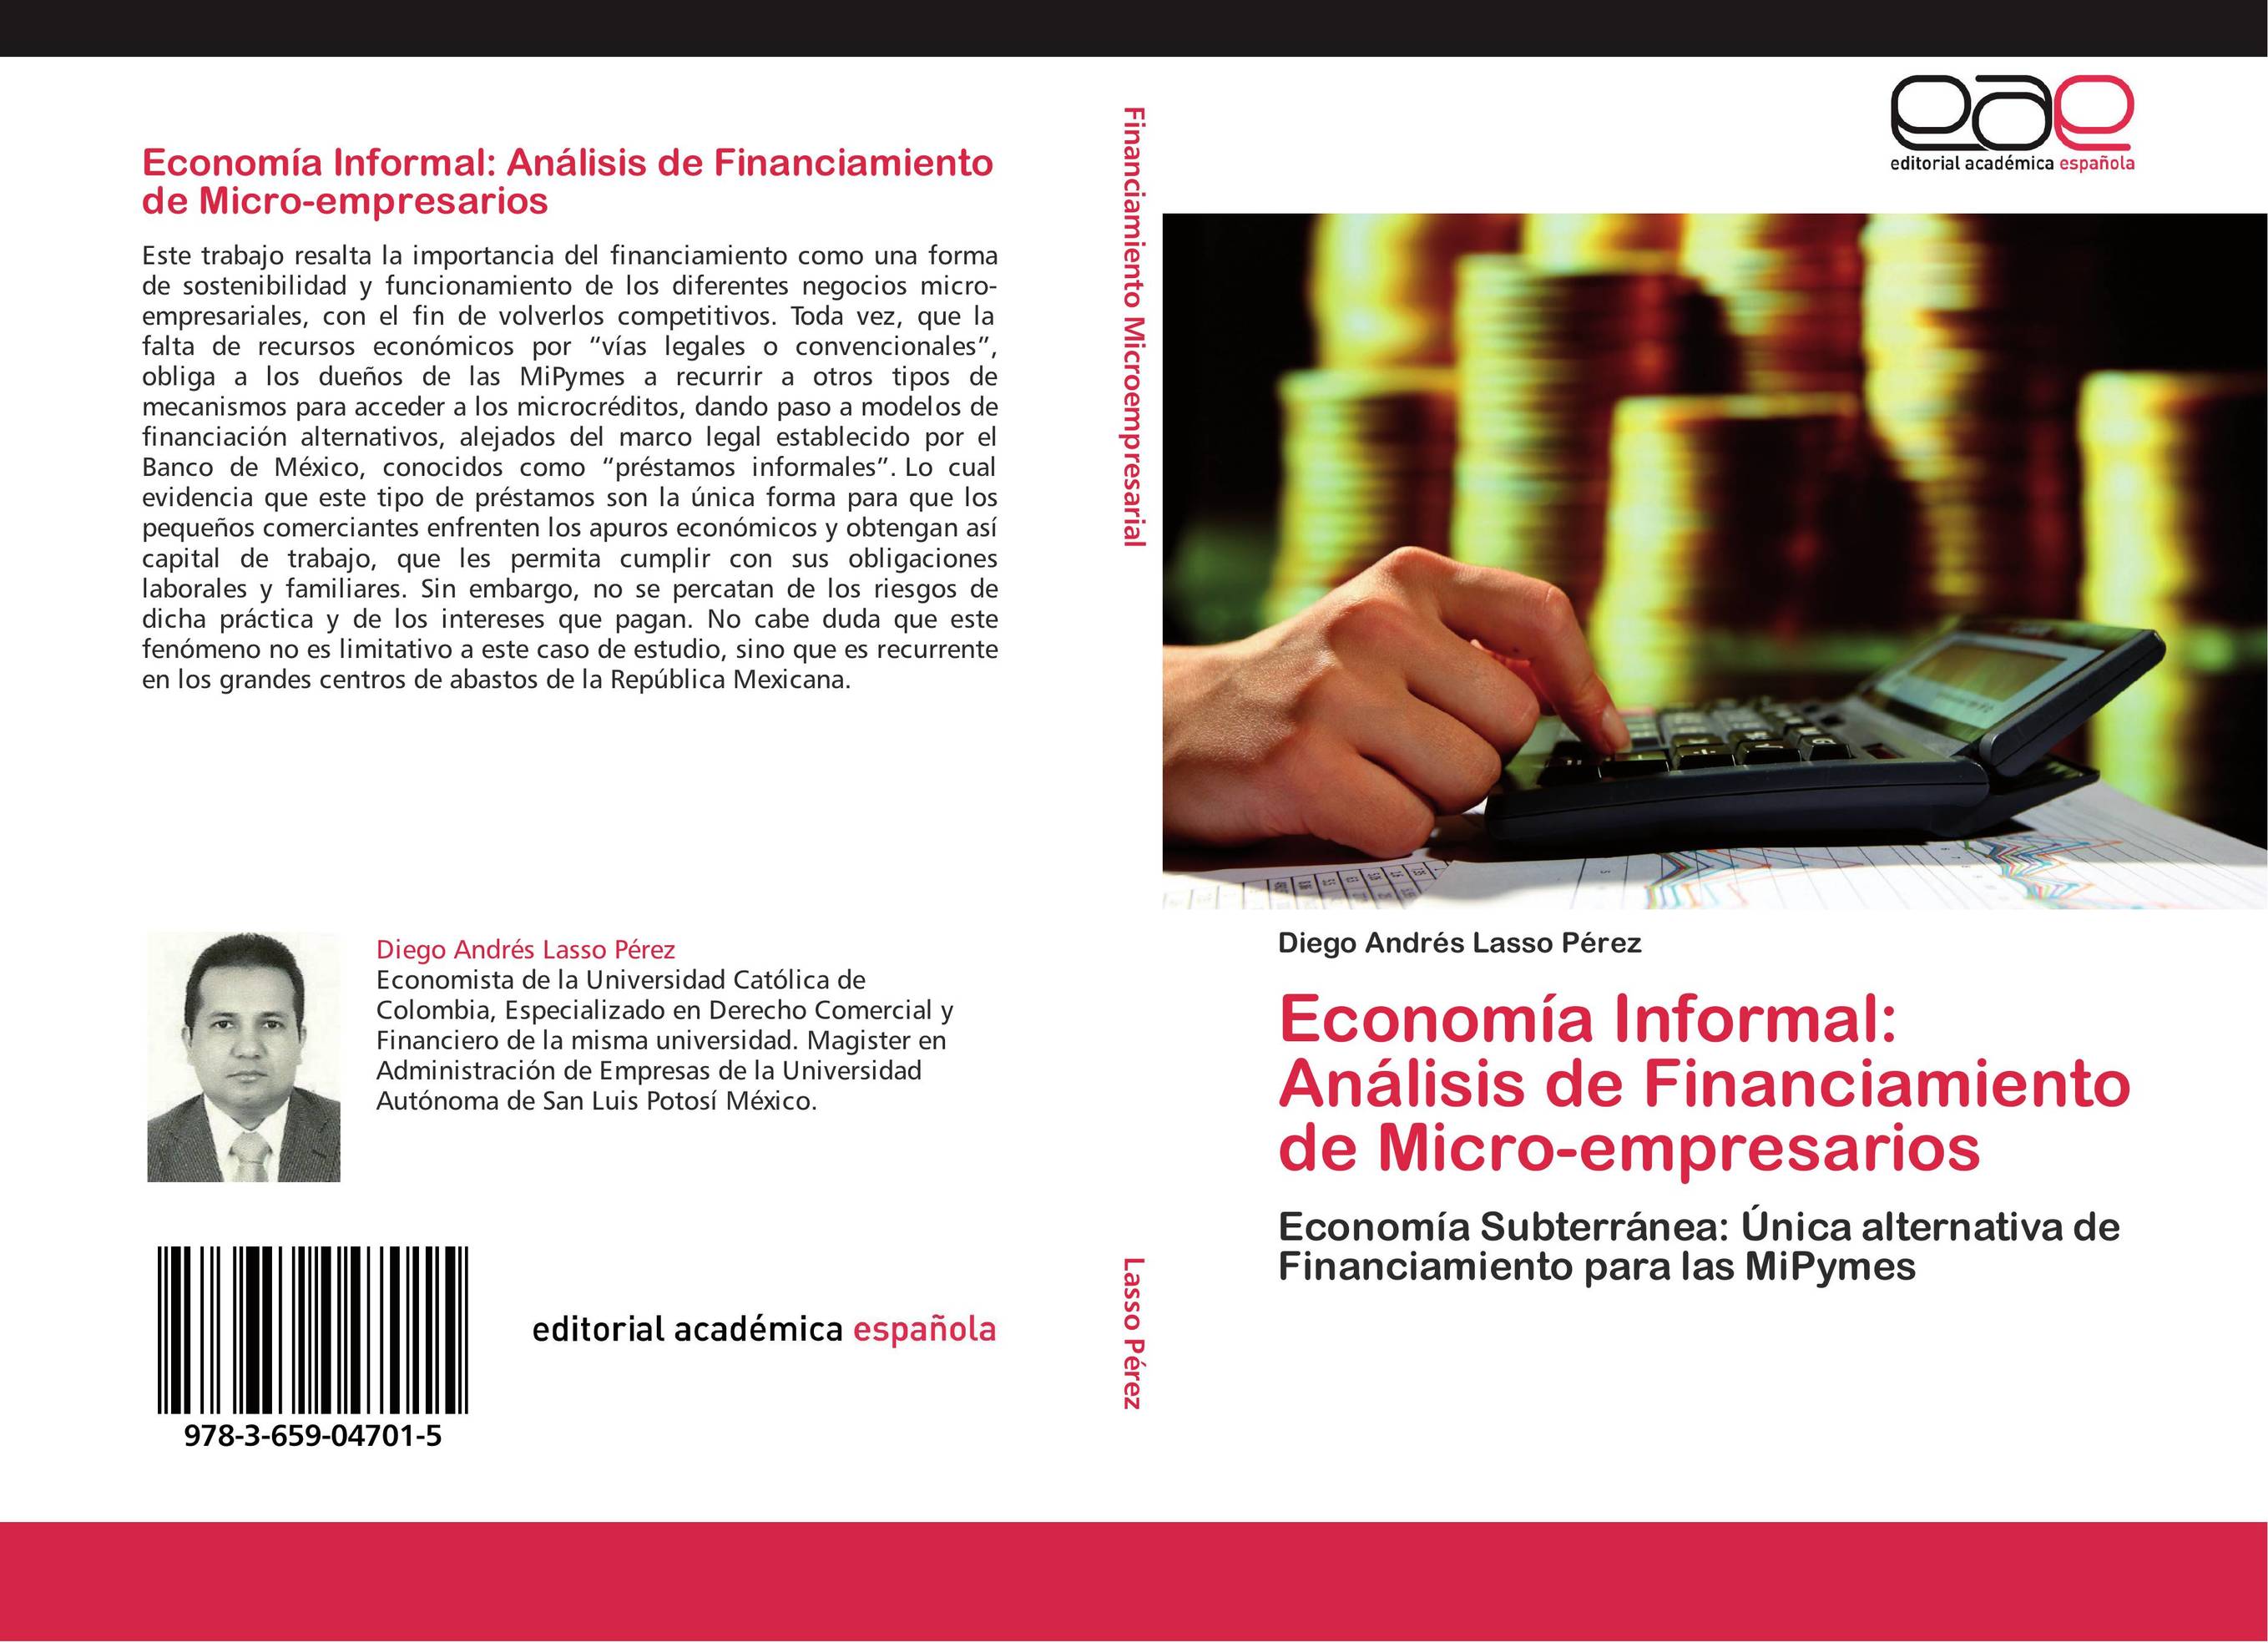 Economía Informal: Análisis de Financiamiento de Micro-empresarios